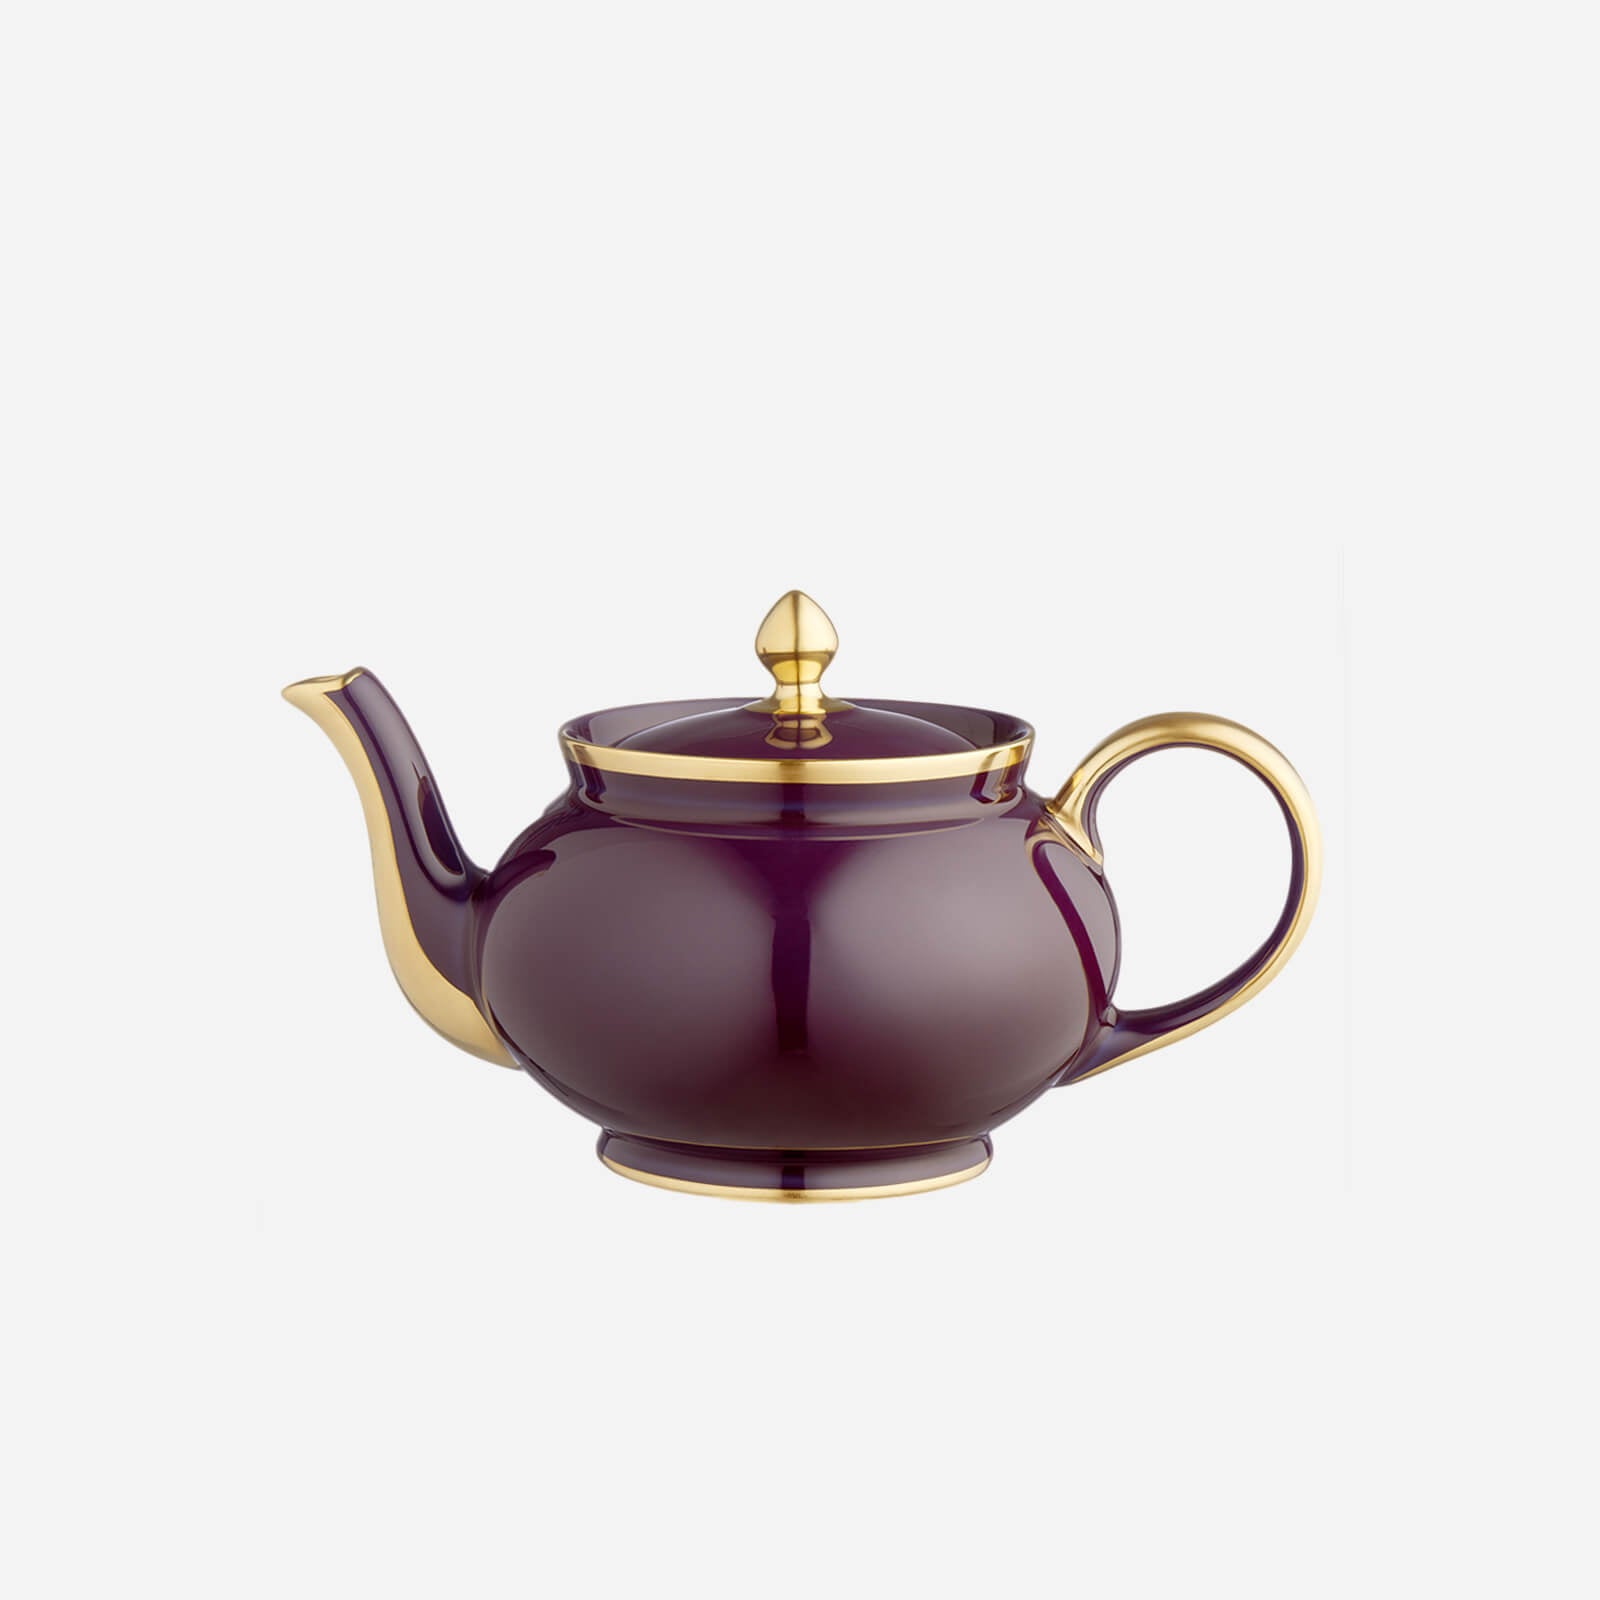 https://www.bonadea.com/cdn/shop/products/Legle_Limoges_-_Sous_Le_Soleil_Aubergine_Teapot_1600x.jpg?v=1539184656